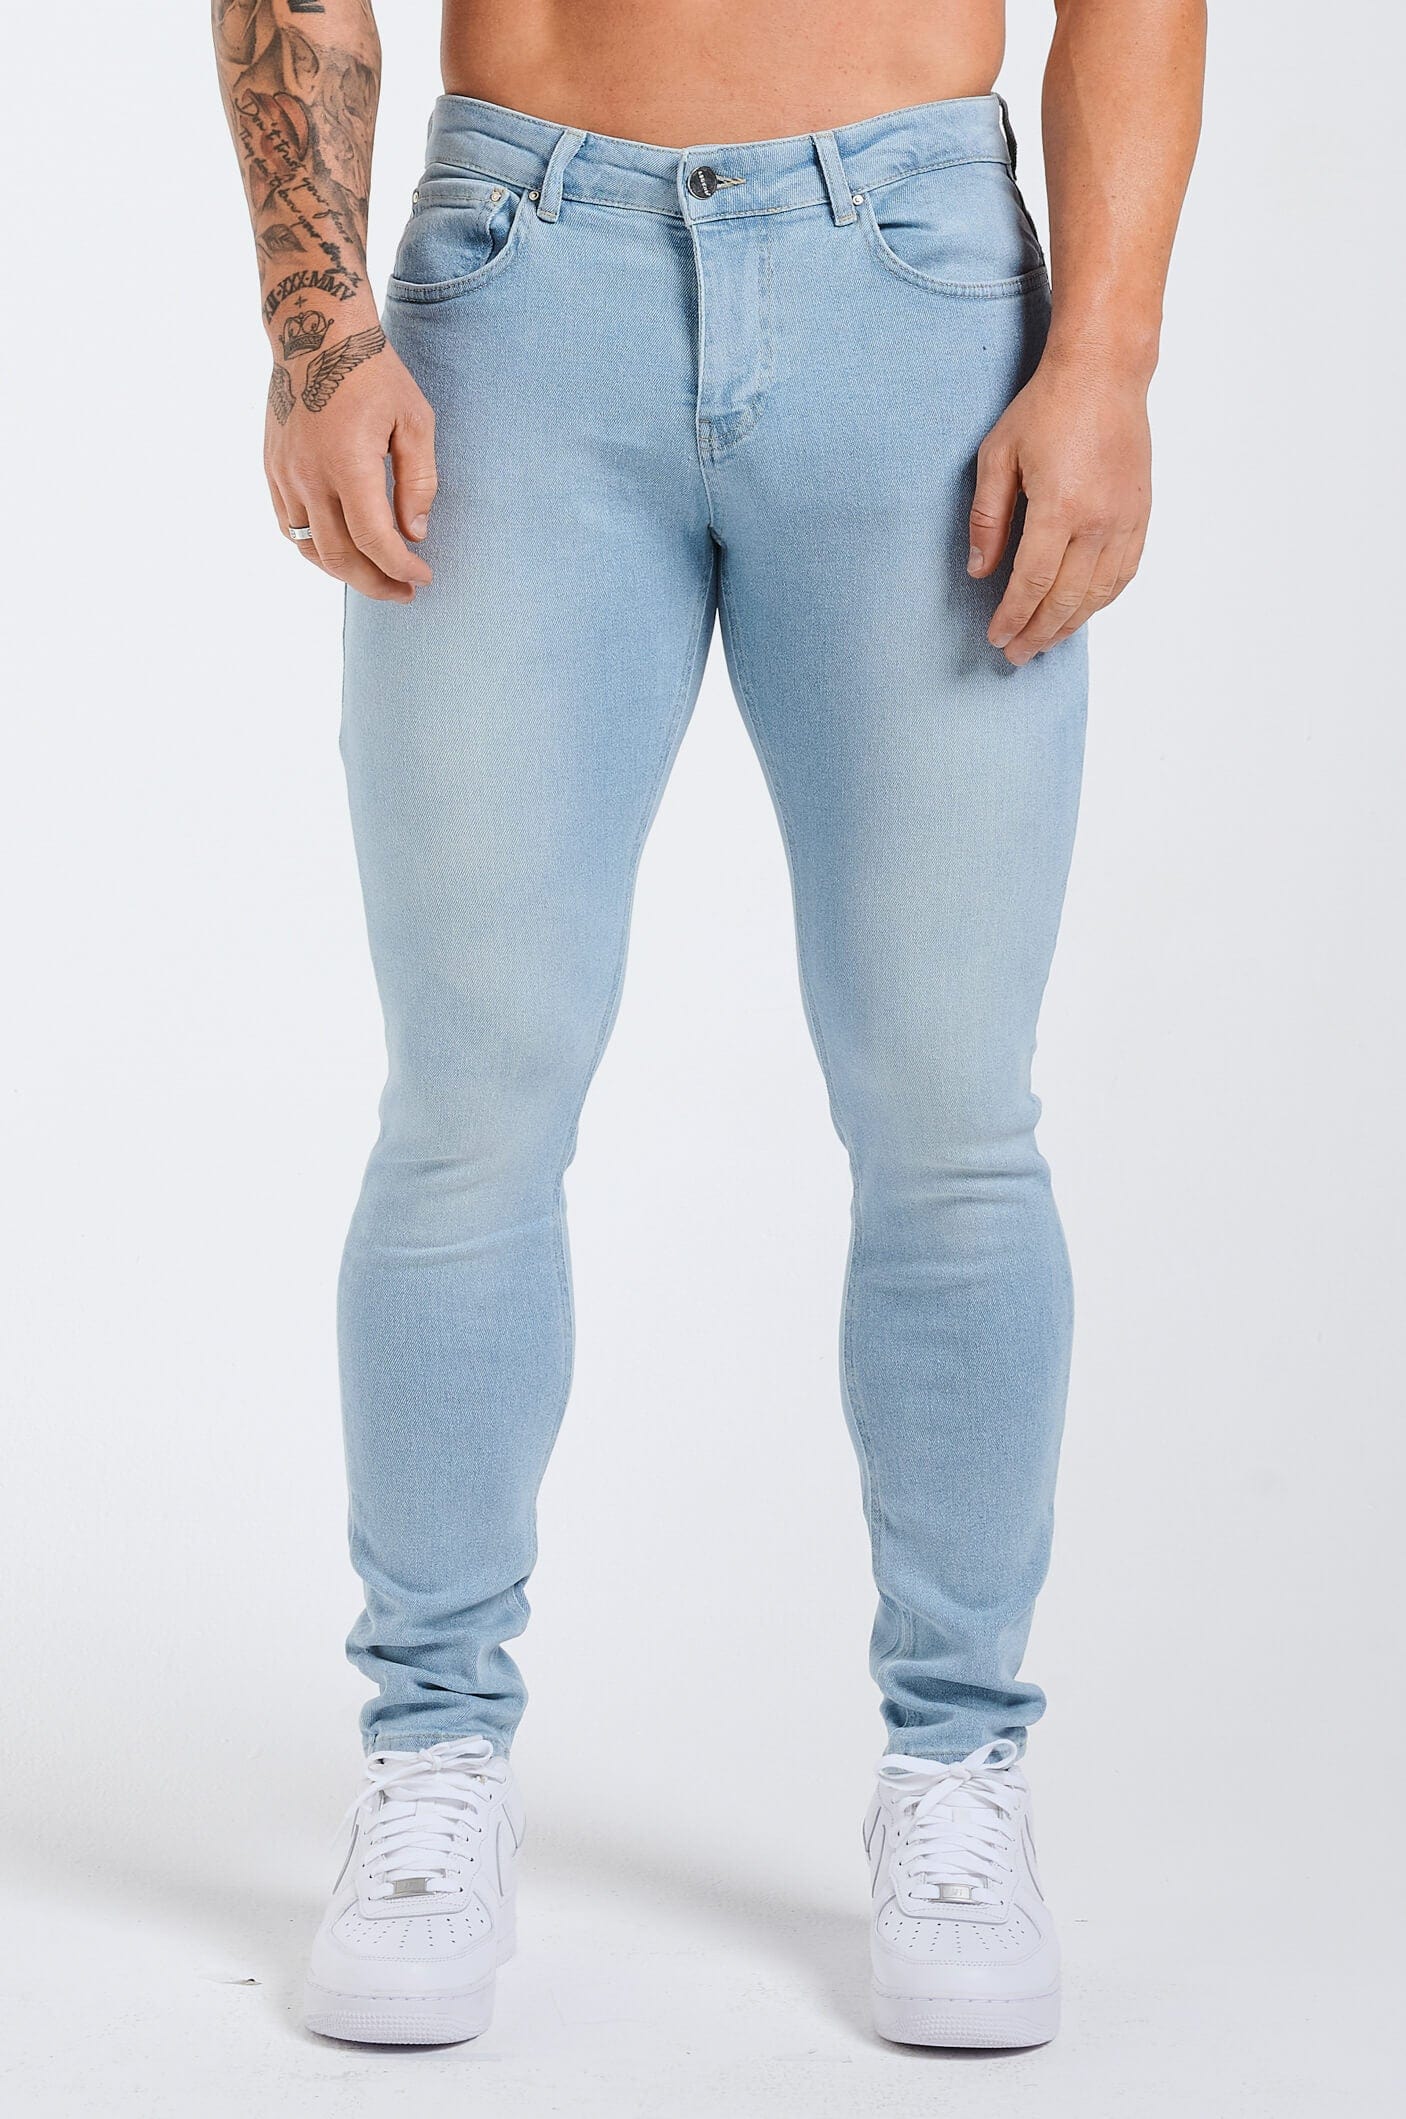 Legend London Jeans - slim 2.0 SLIM FIT JEANS 2.0 - PALE LIGHT BLUE